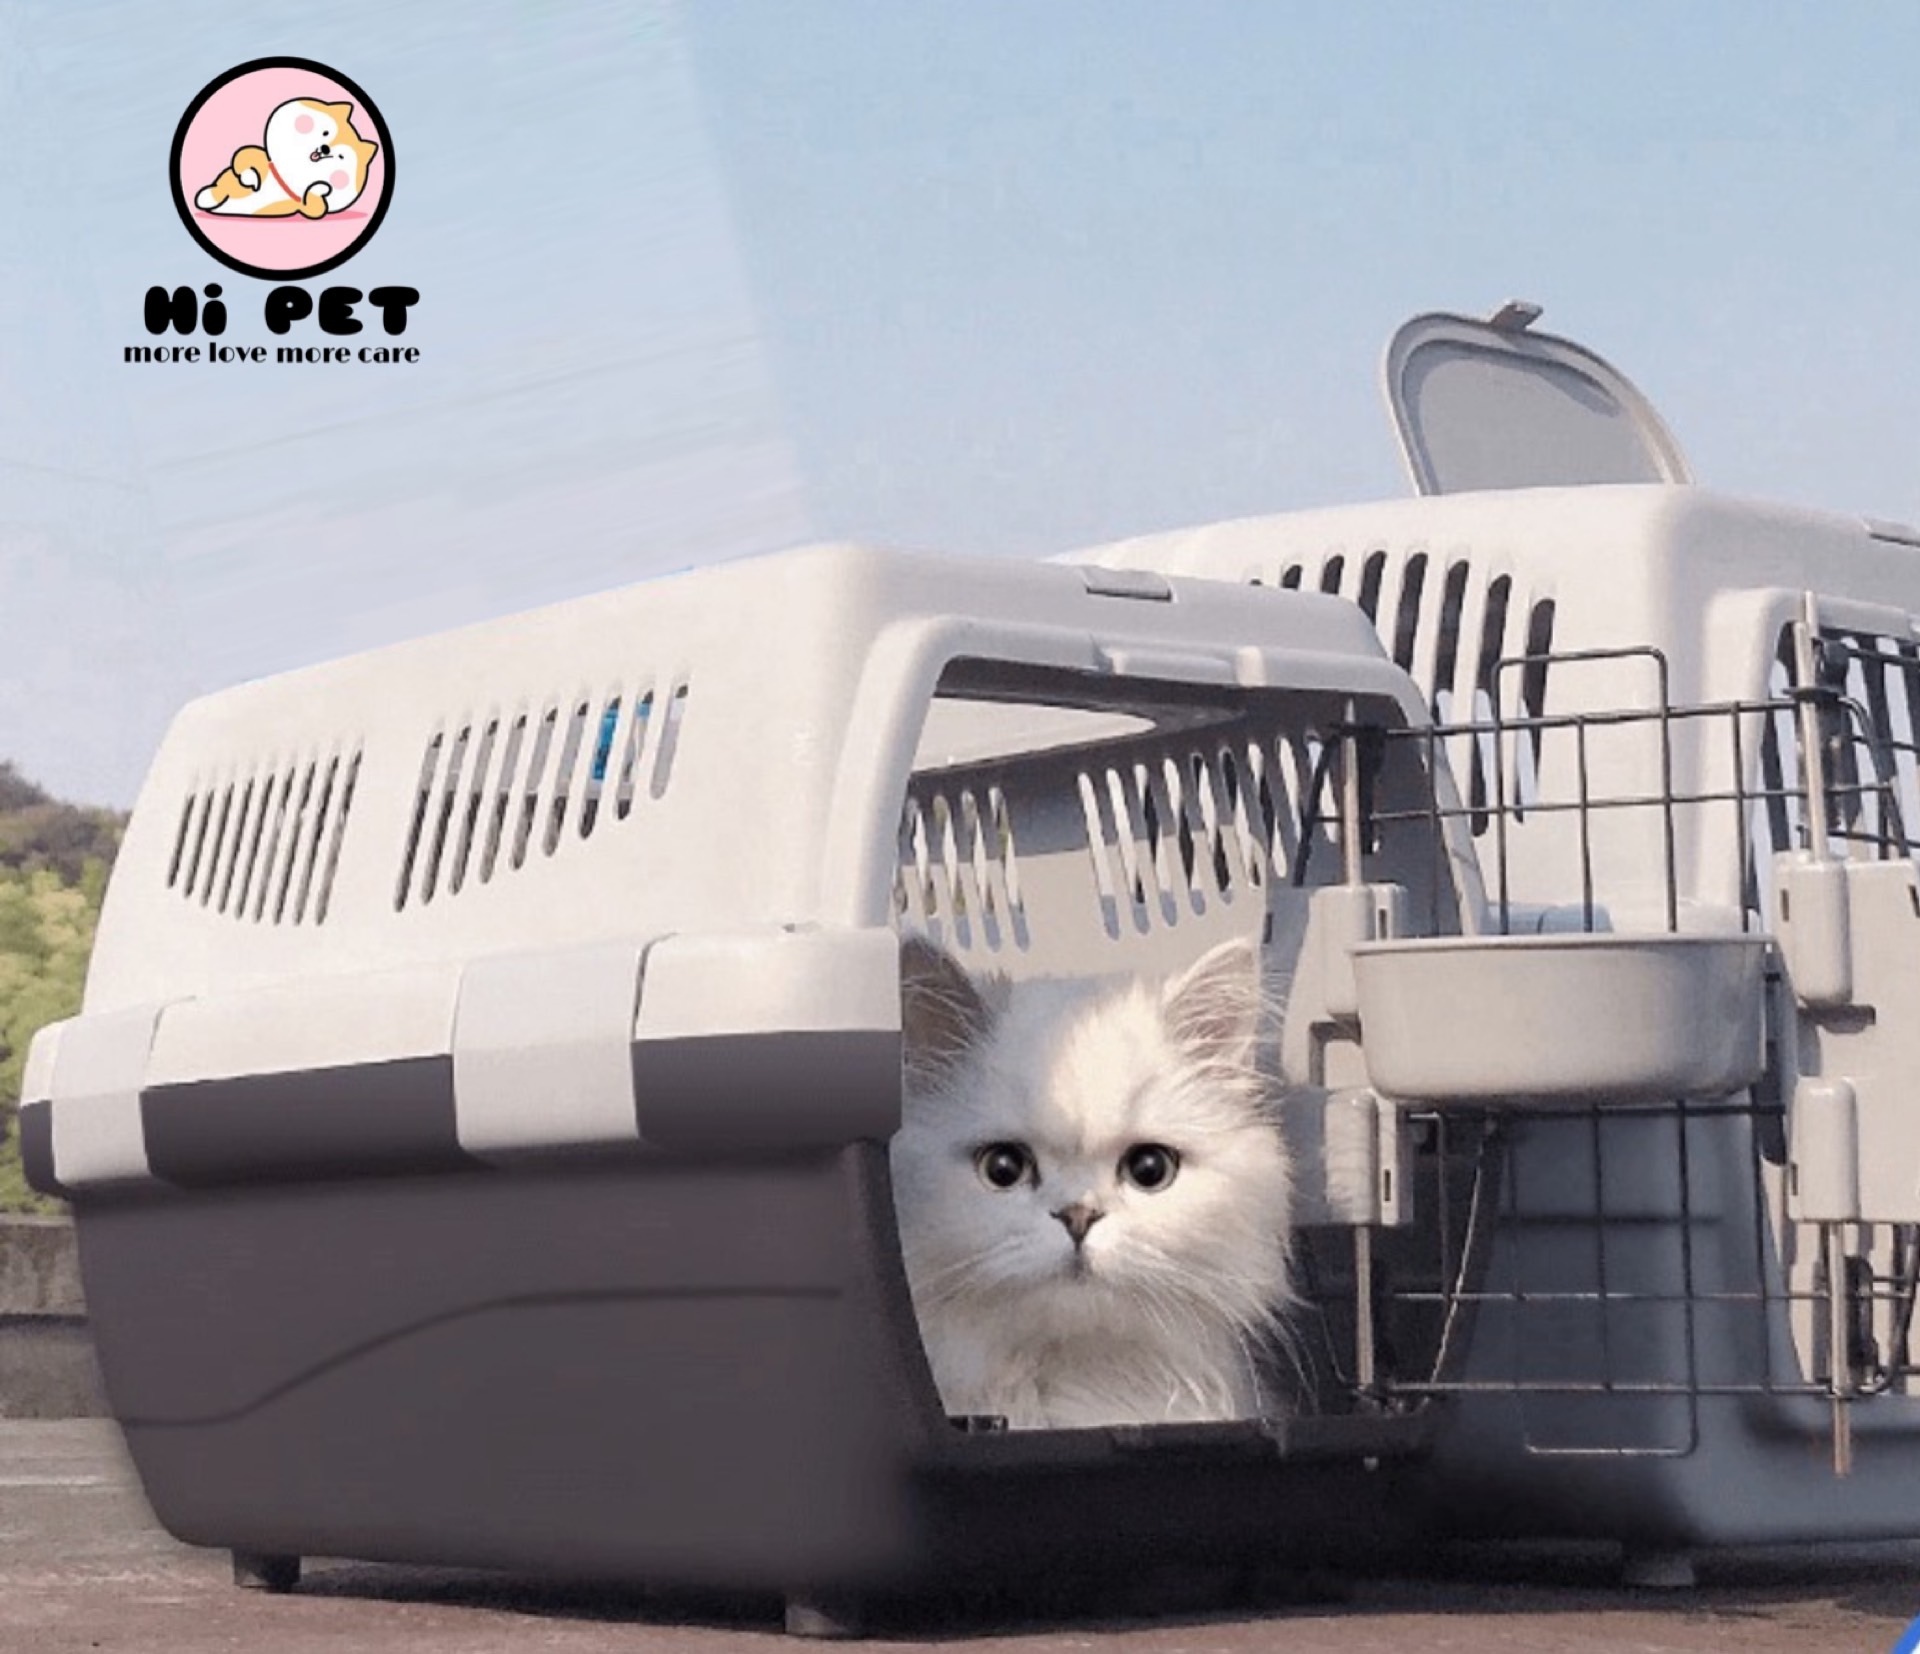 ? Hi Pets House? Pet airplane box กรงเดินทาง กล่องเครื่องบินสัตว์เลี้ยง กล่องเดินทางสำหรับสัตว์เลี้ยง กล่องใส่สุนัข boxใส่สุนัข กล่องใส่แมว boxใ